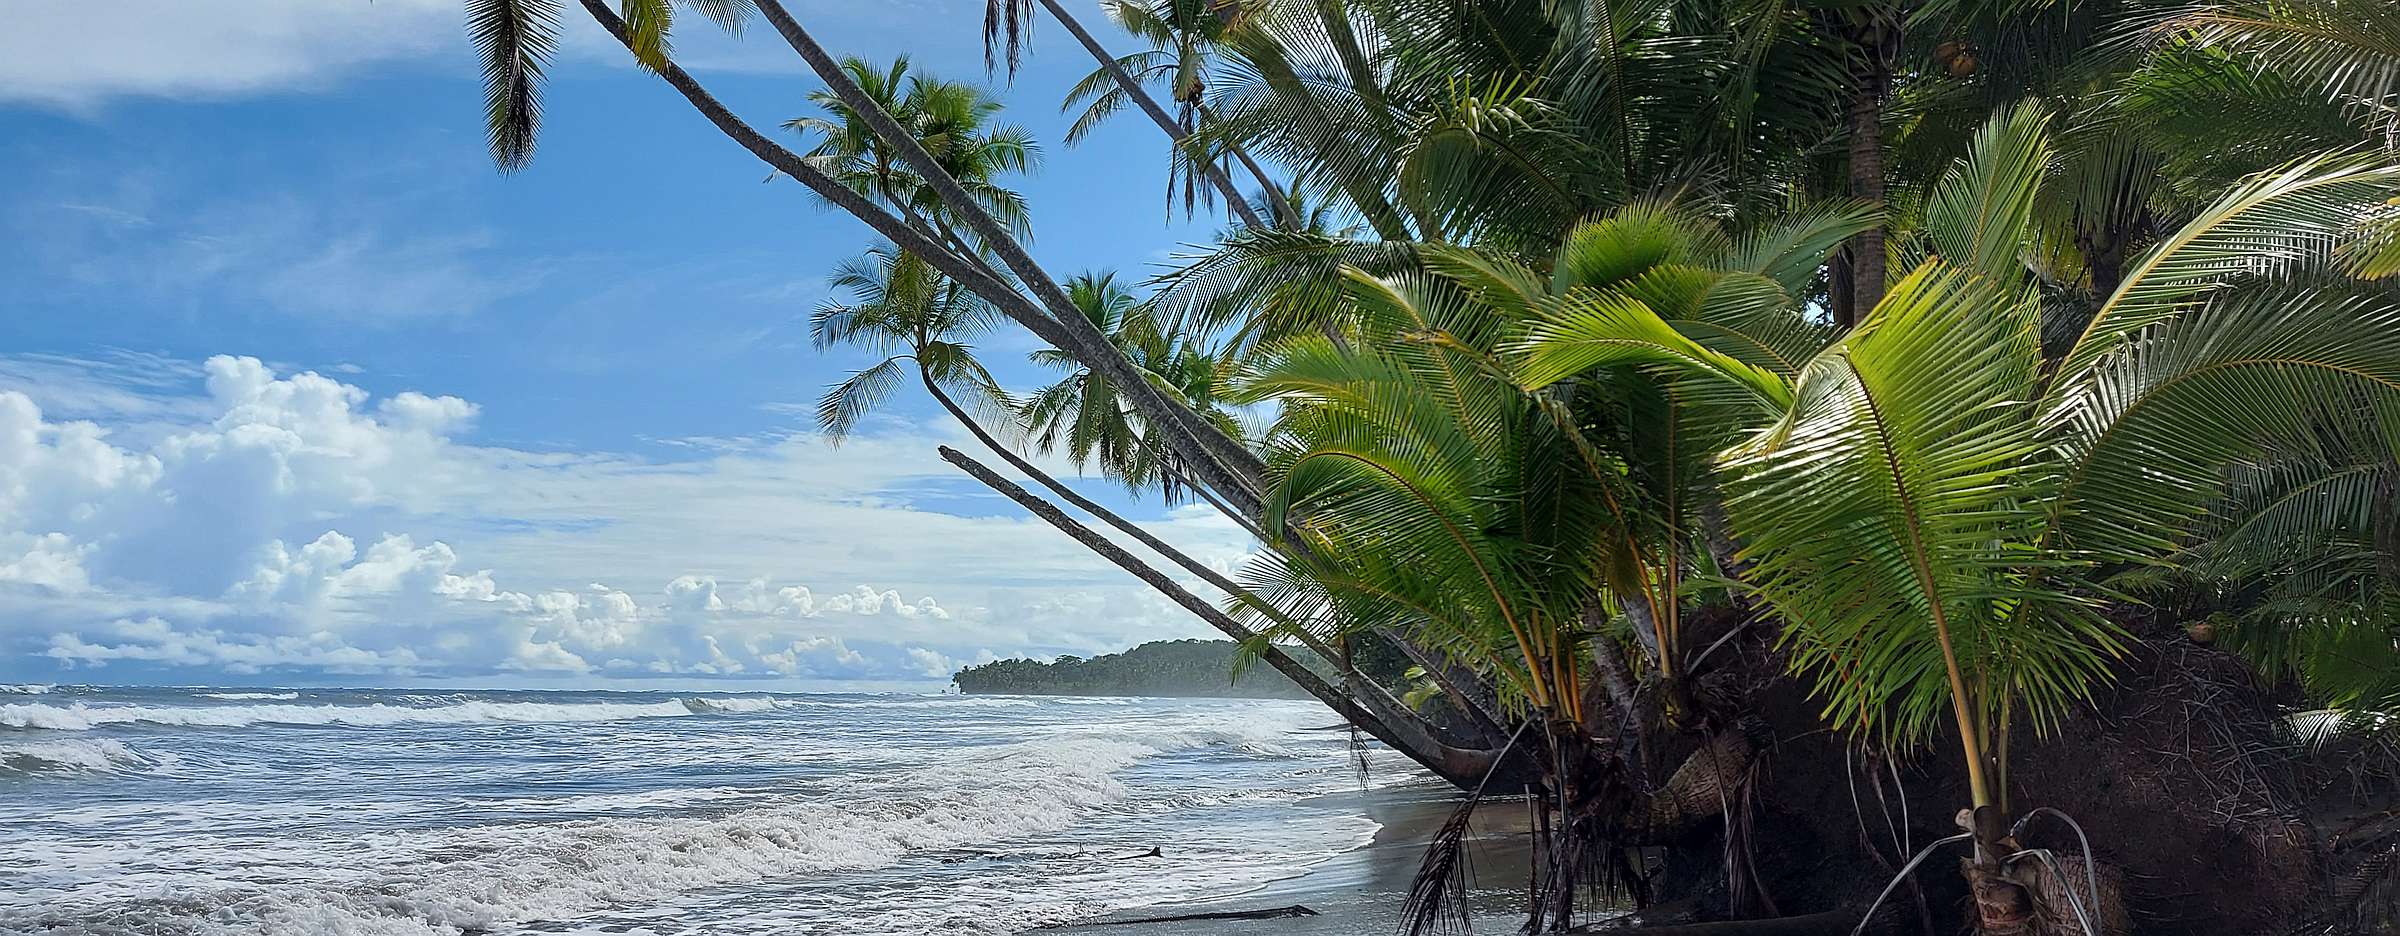 Rauschende Brandung an einem mit Palmen bewachsenen Strand in Costa Rica